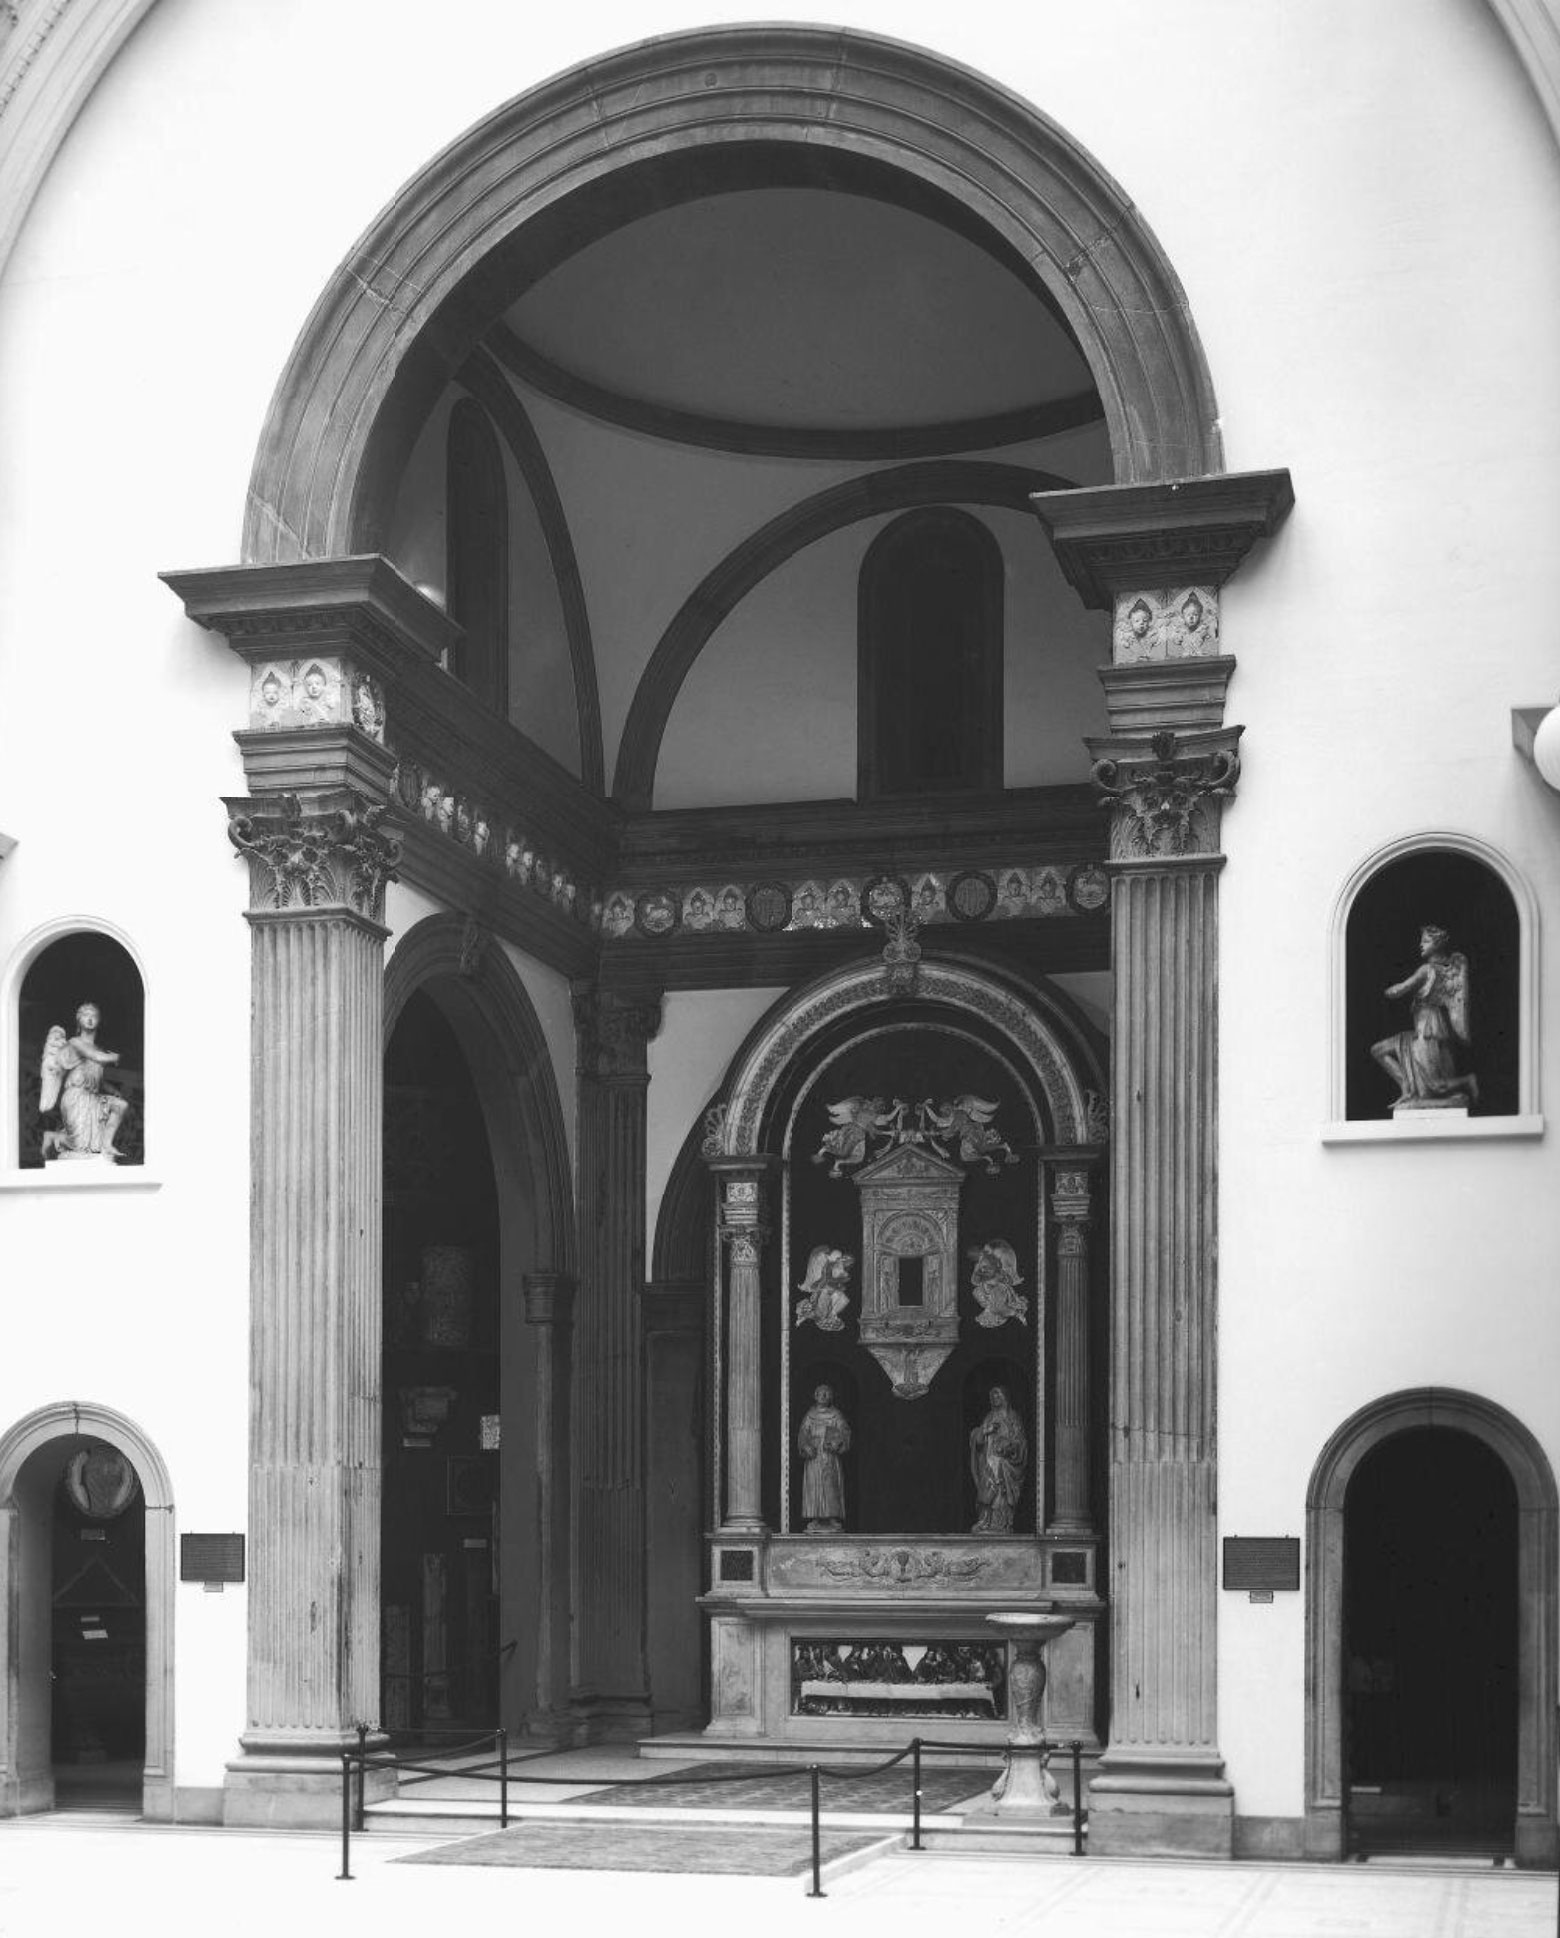 Santa Chiara Chapel